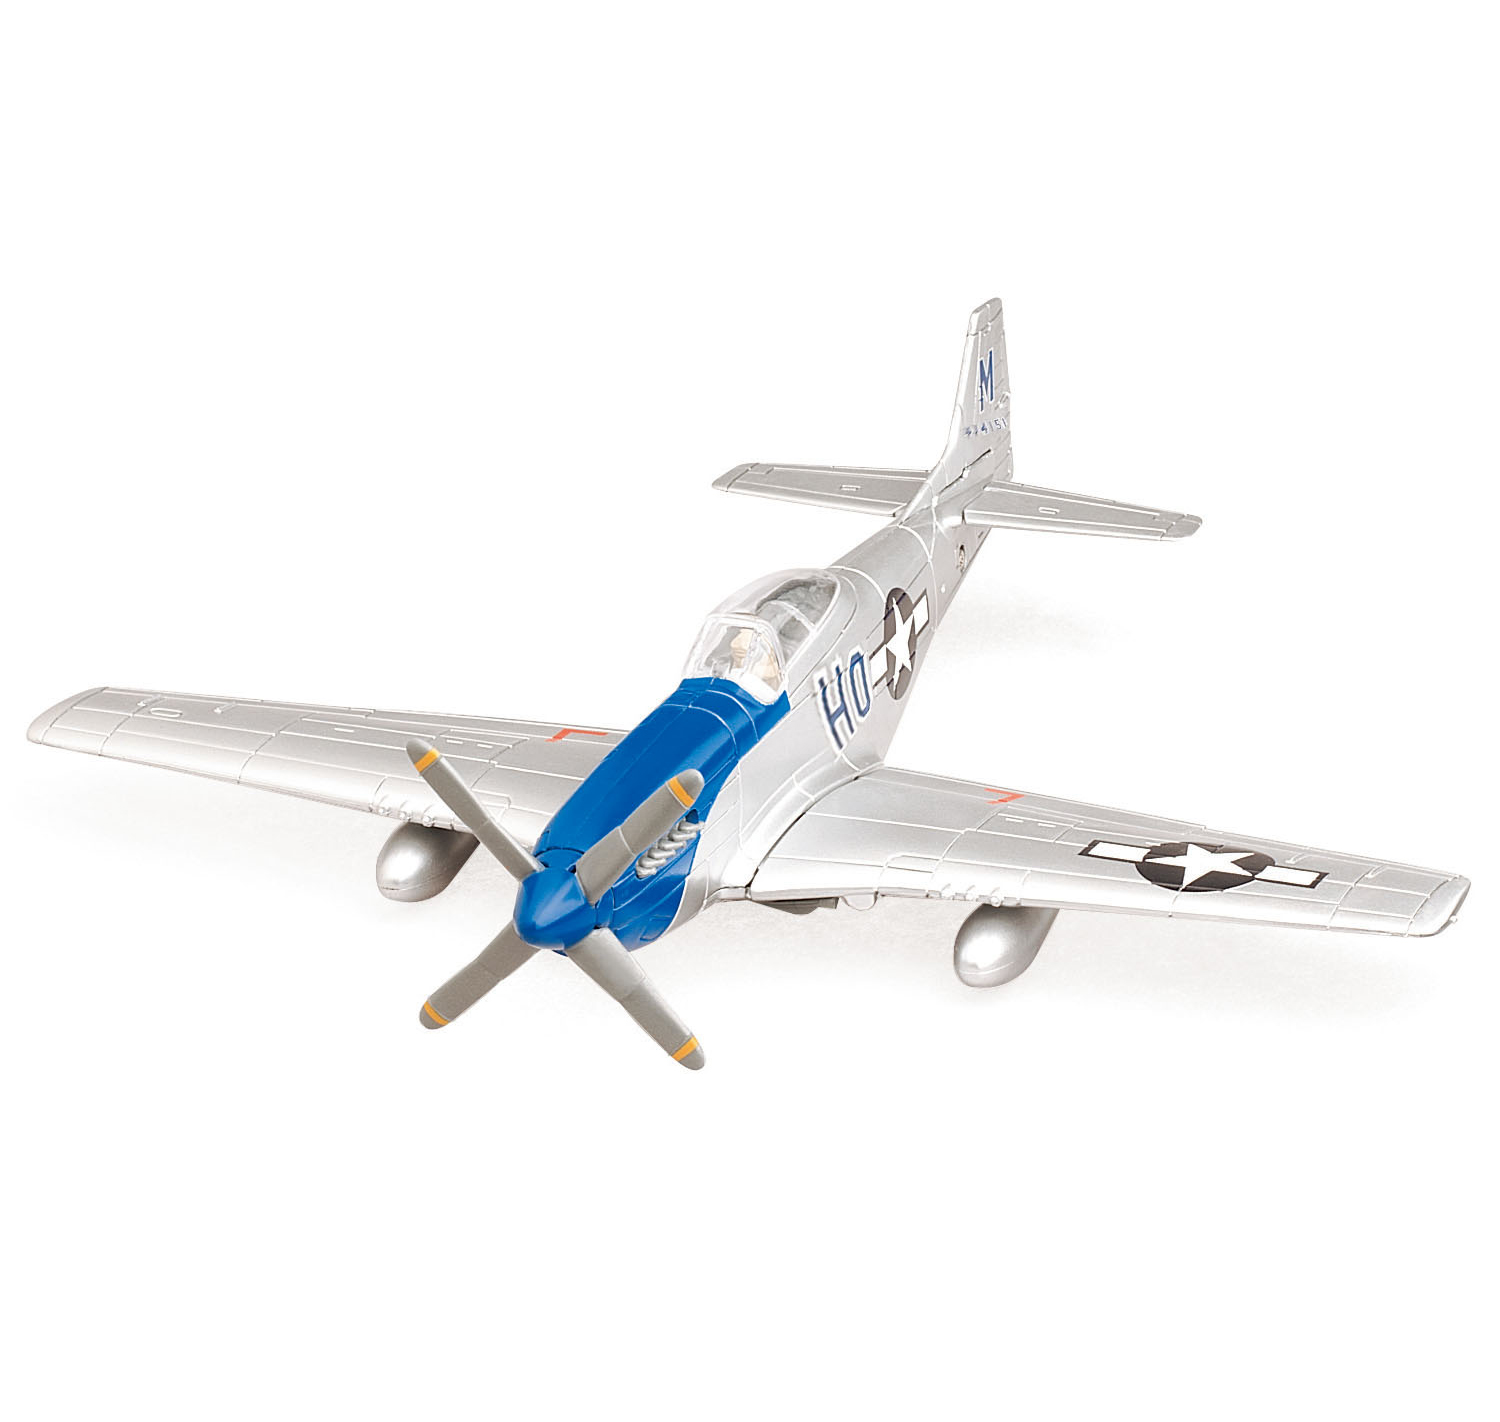 Іграшкова модель літака North American P-51 Mustang